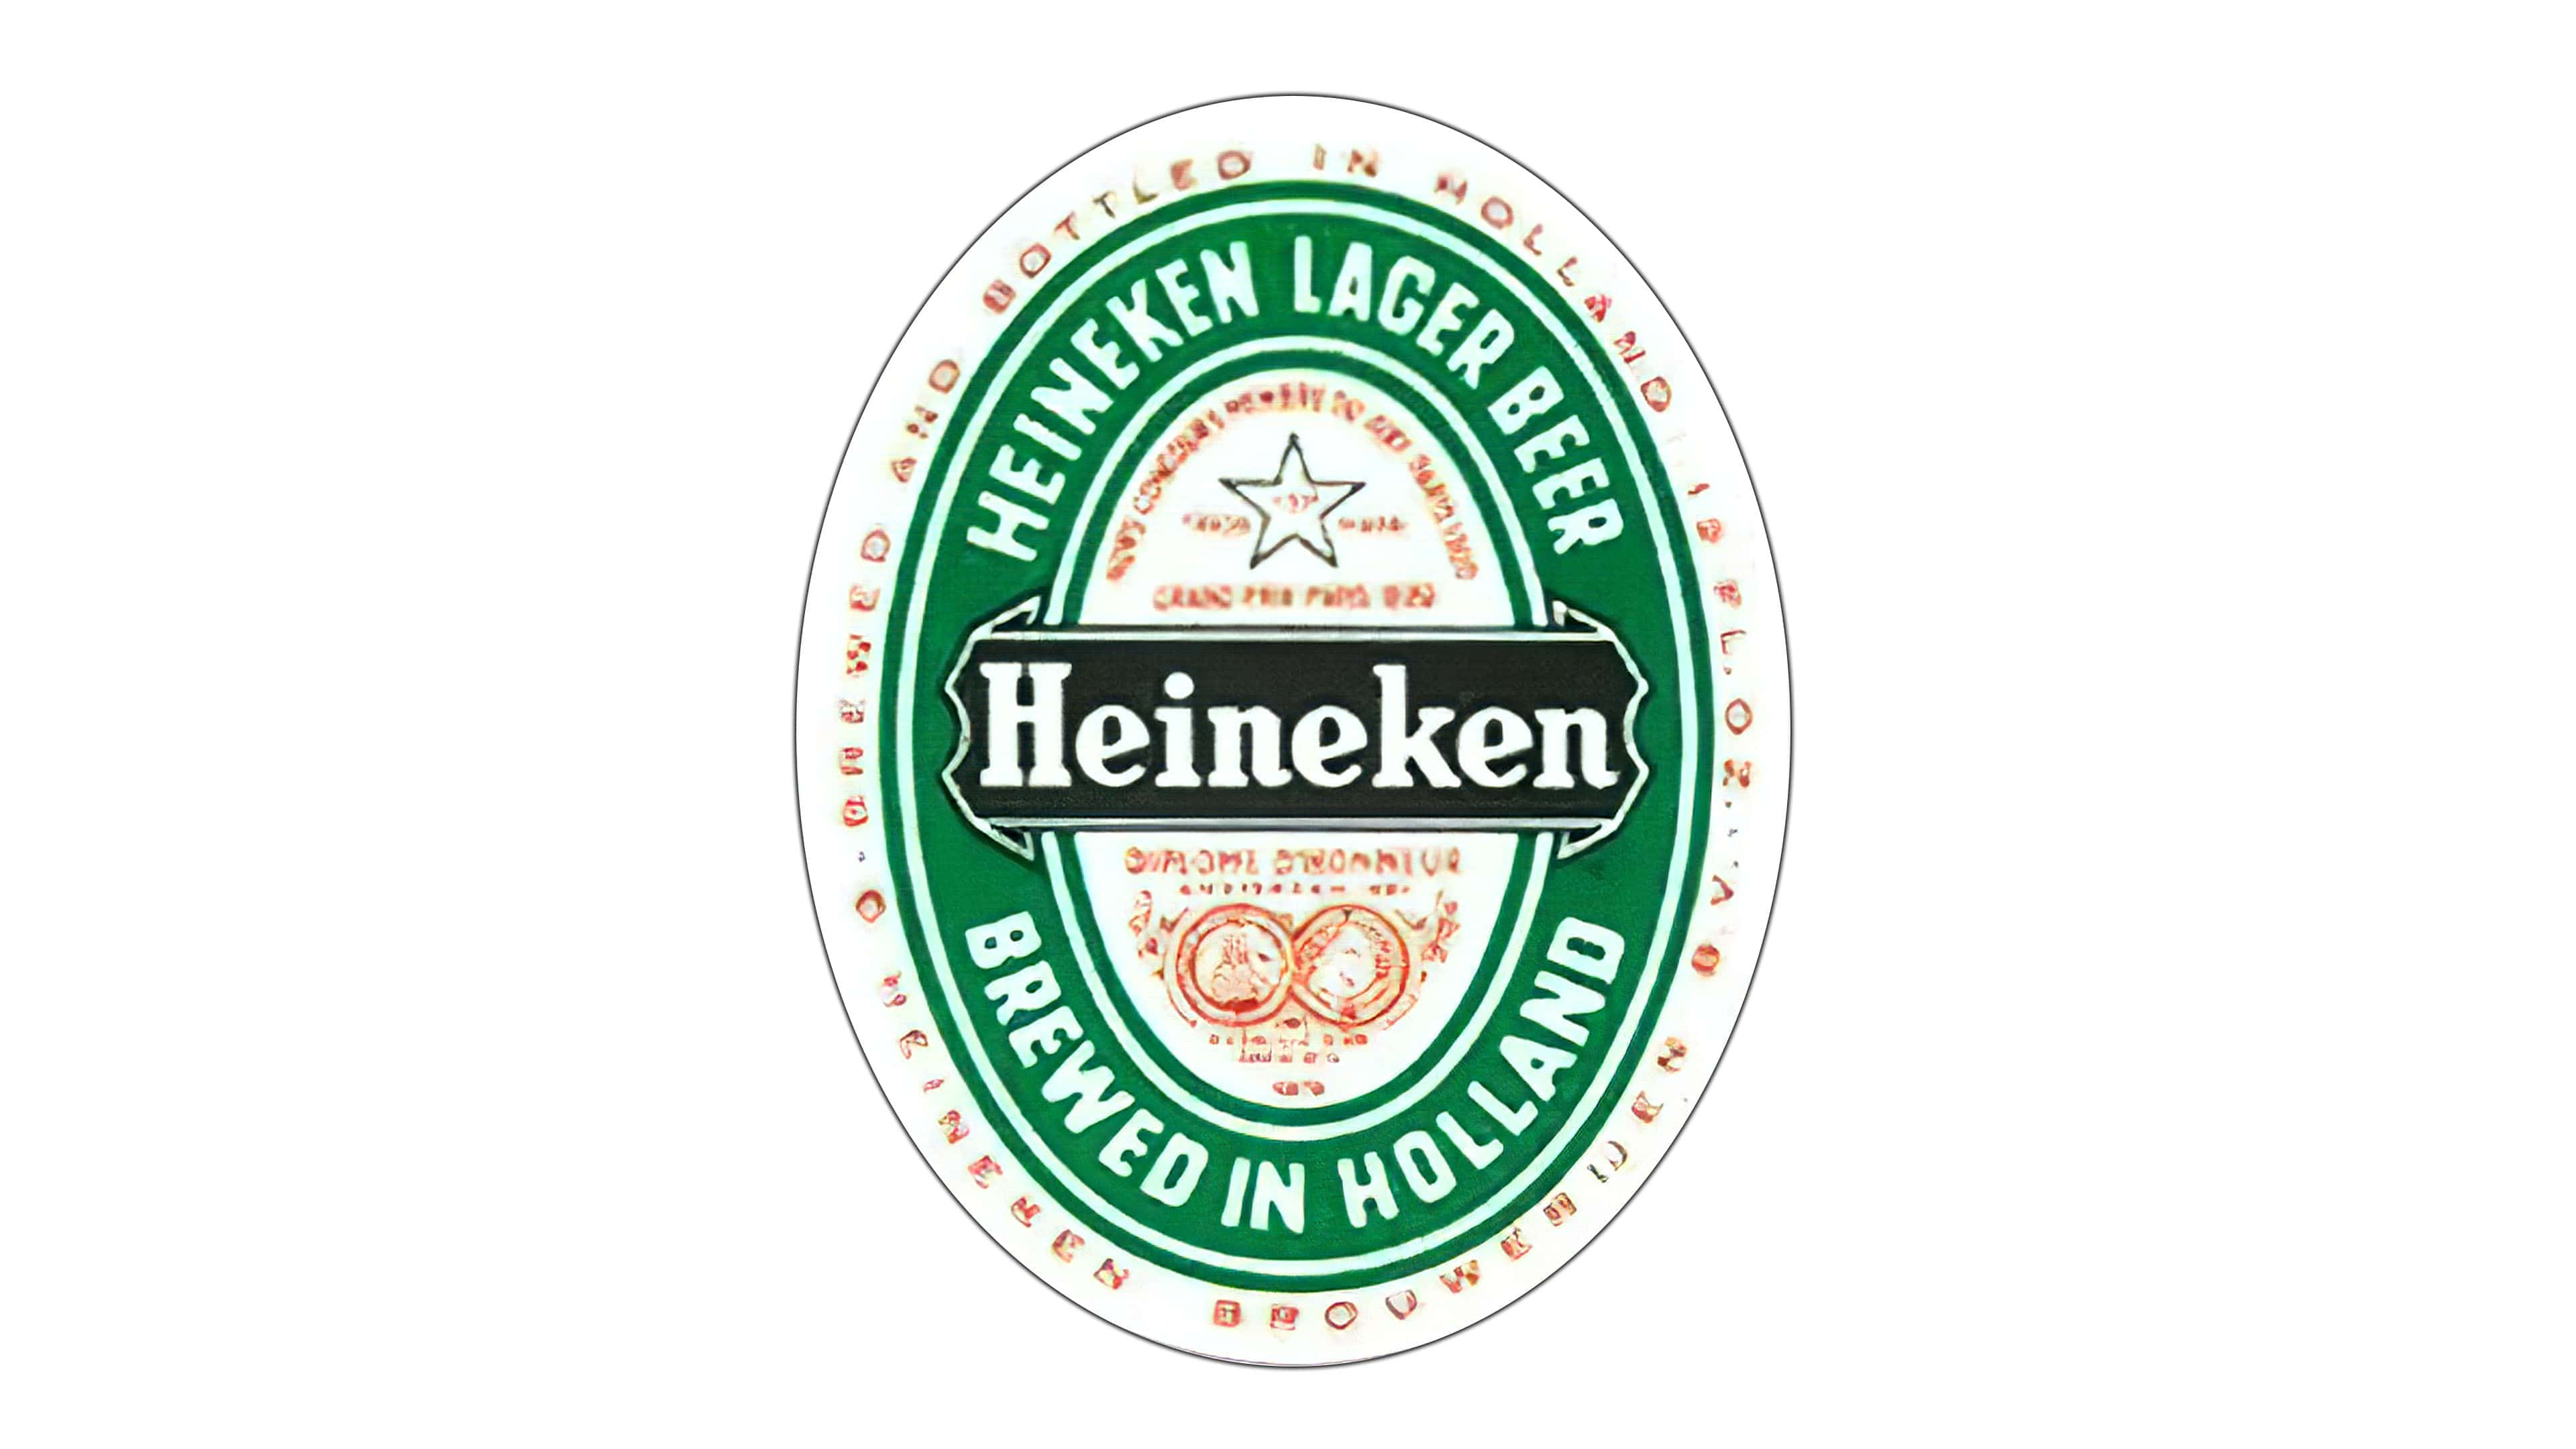 Update more than 82 heineken logo png latest - ceg.edu.vn